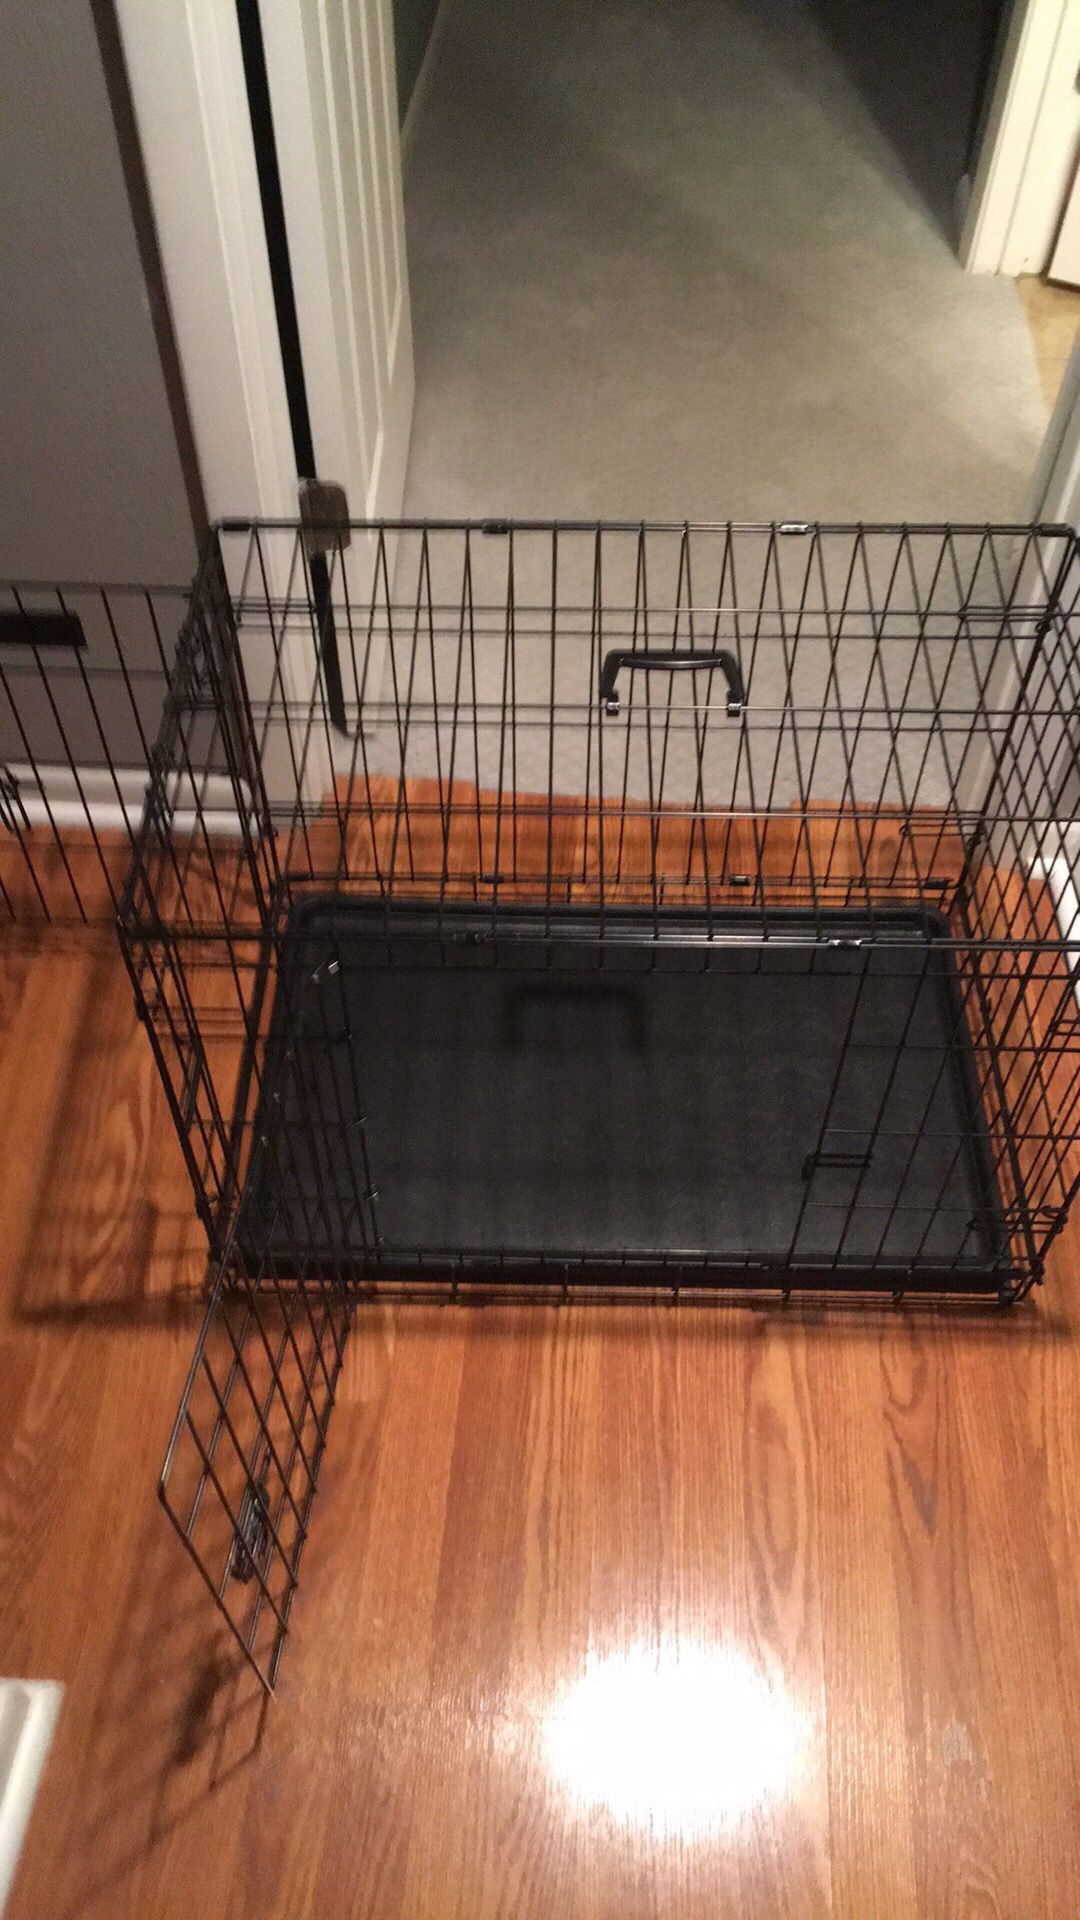 Medium or big pets crate (21x30x19)